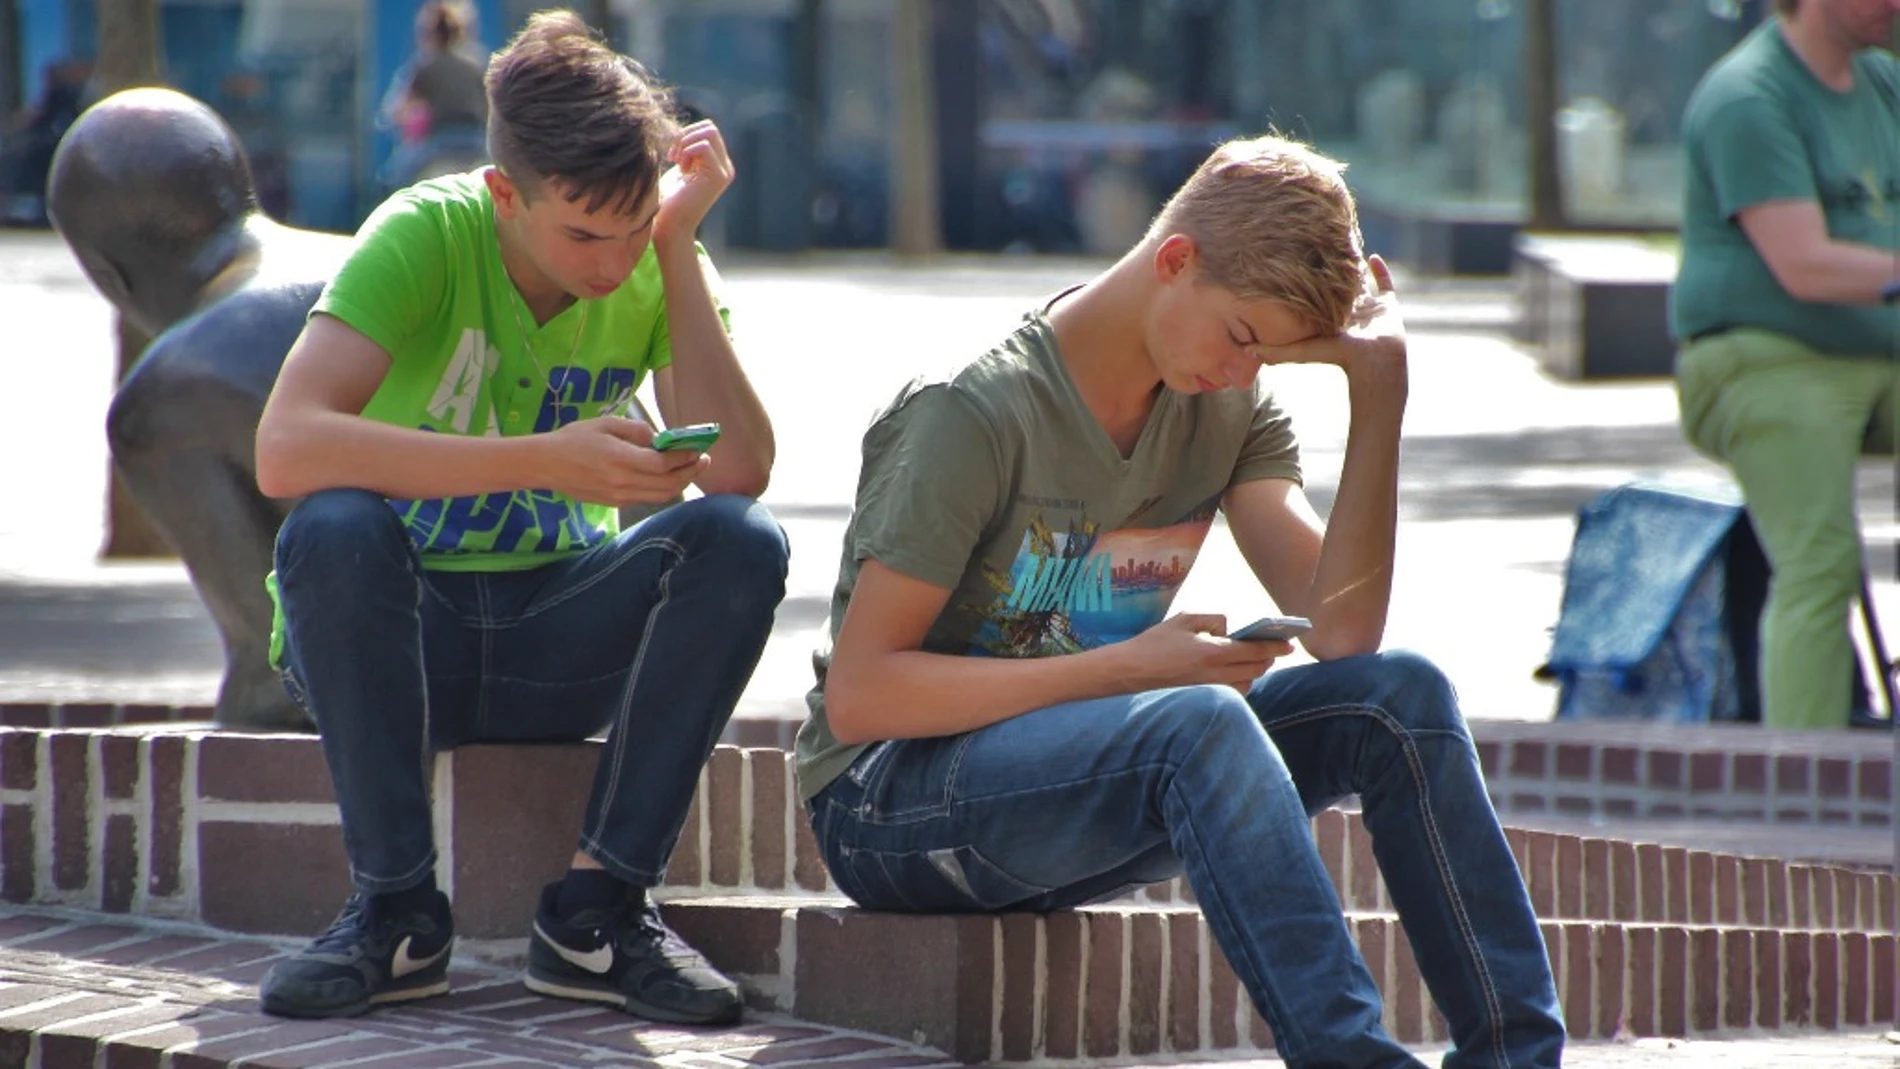 Imagen de archivo de dos adolescentes con su teléfono móvil